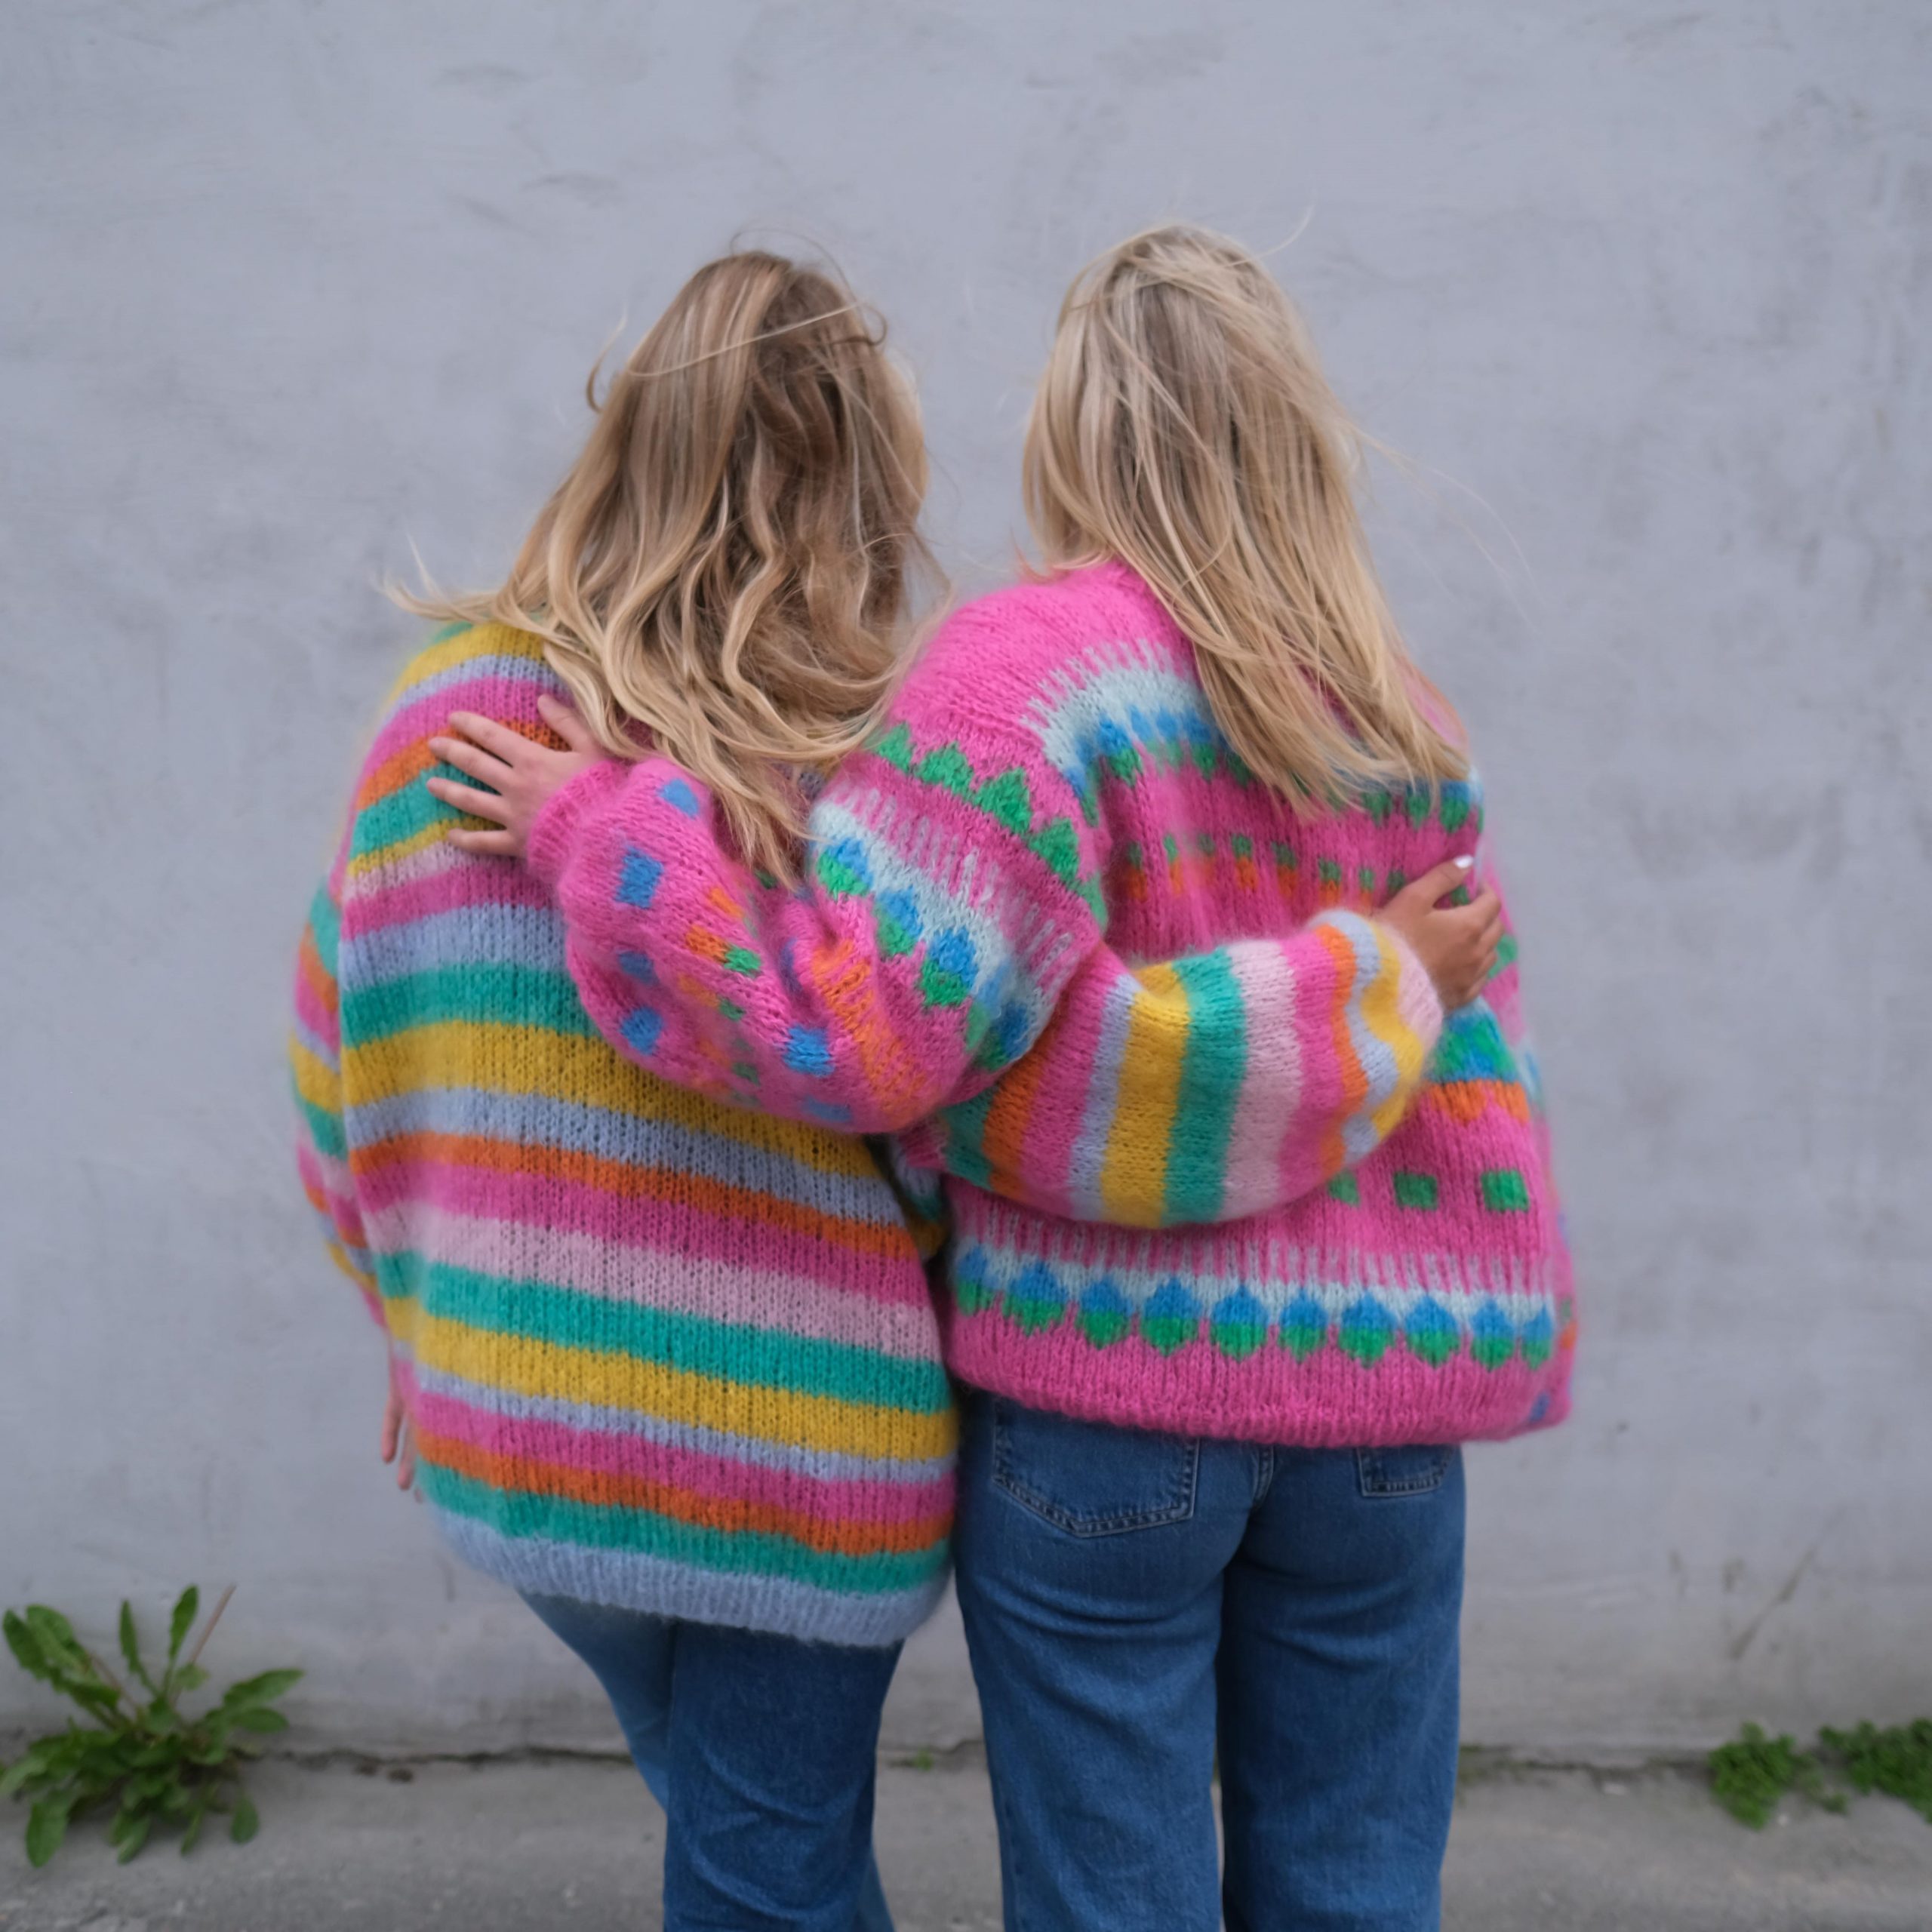 mohair sweater 80s inspired knitting pattern women funkytown